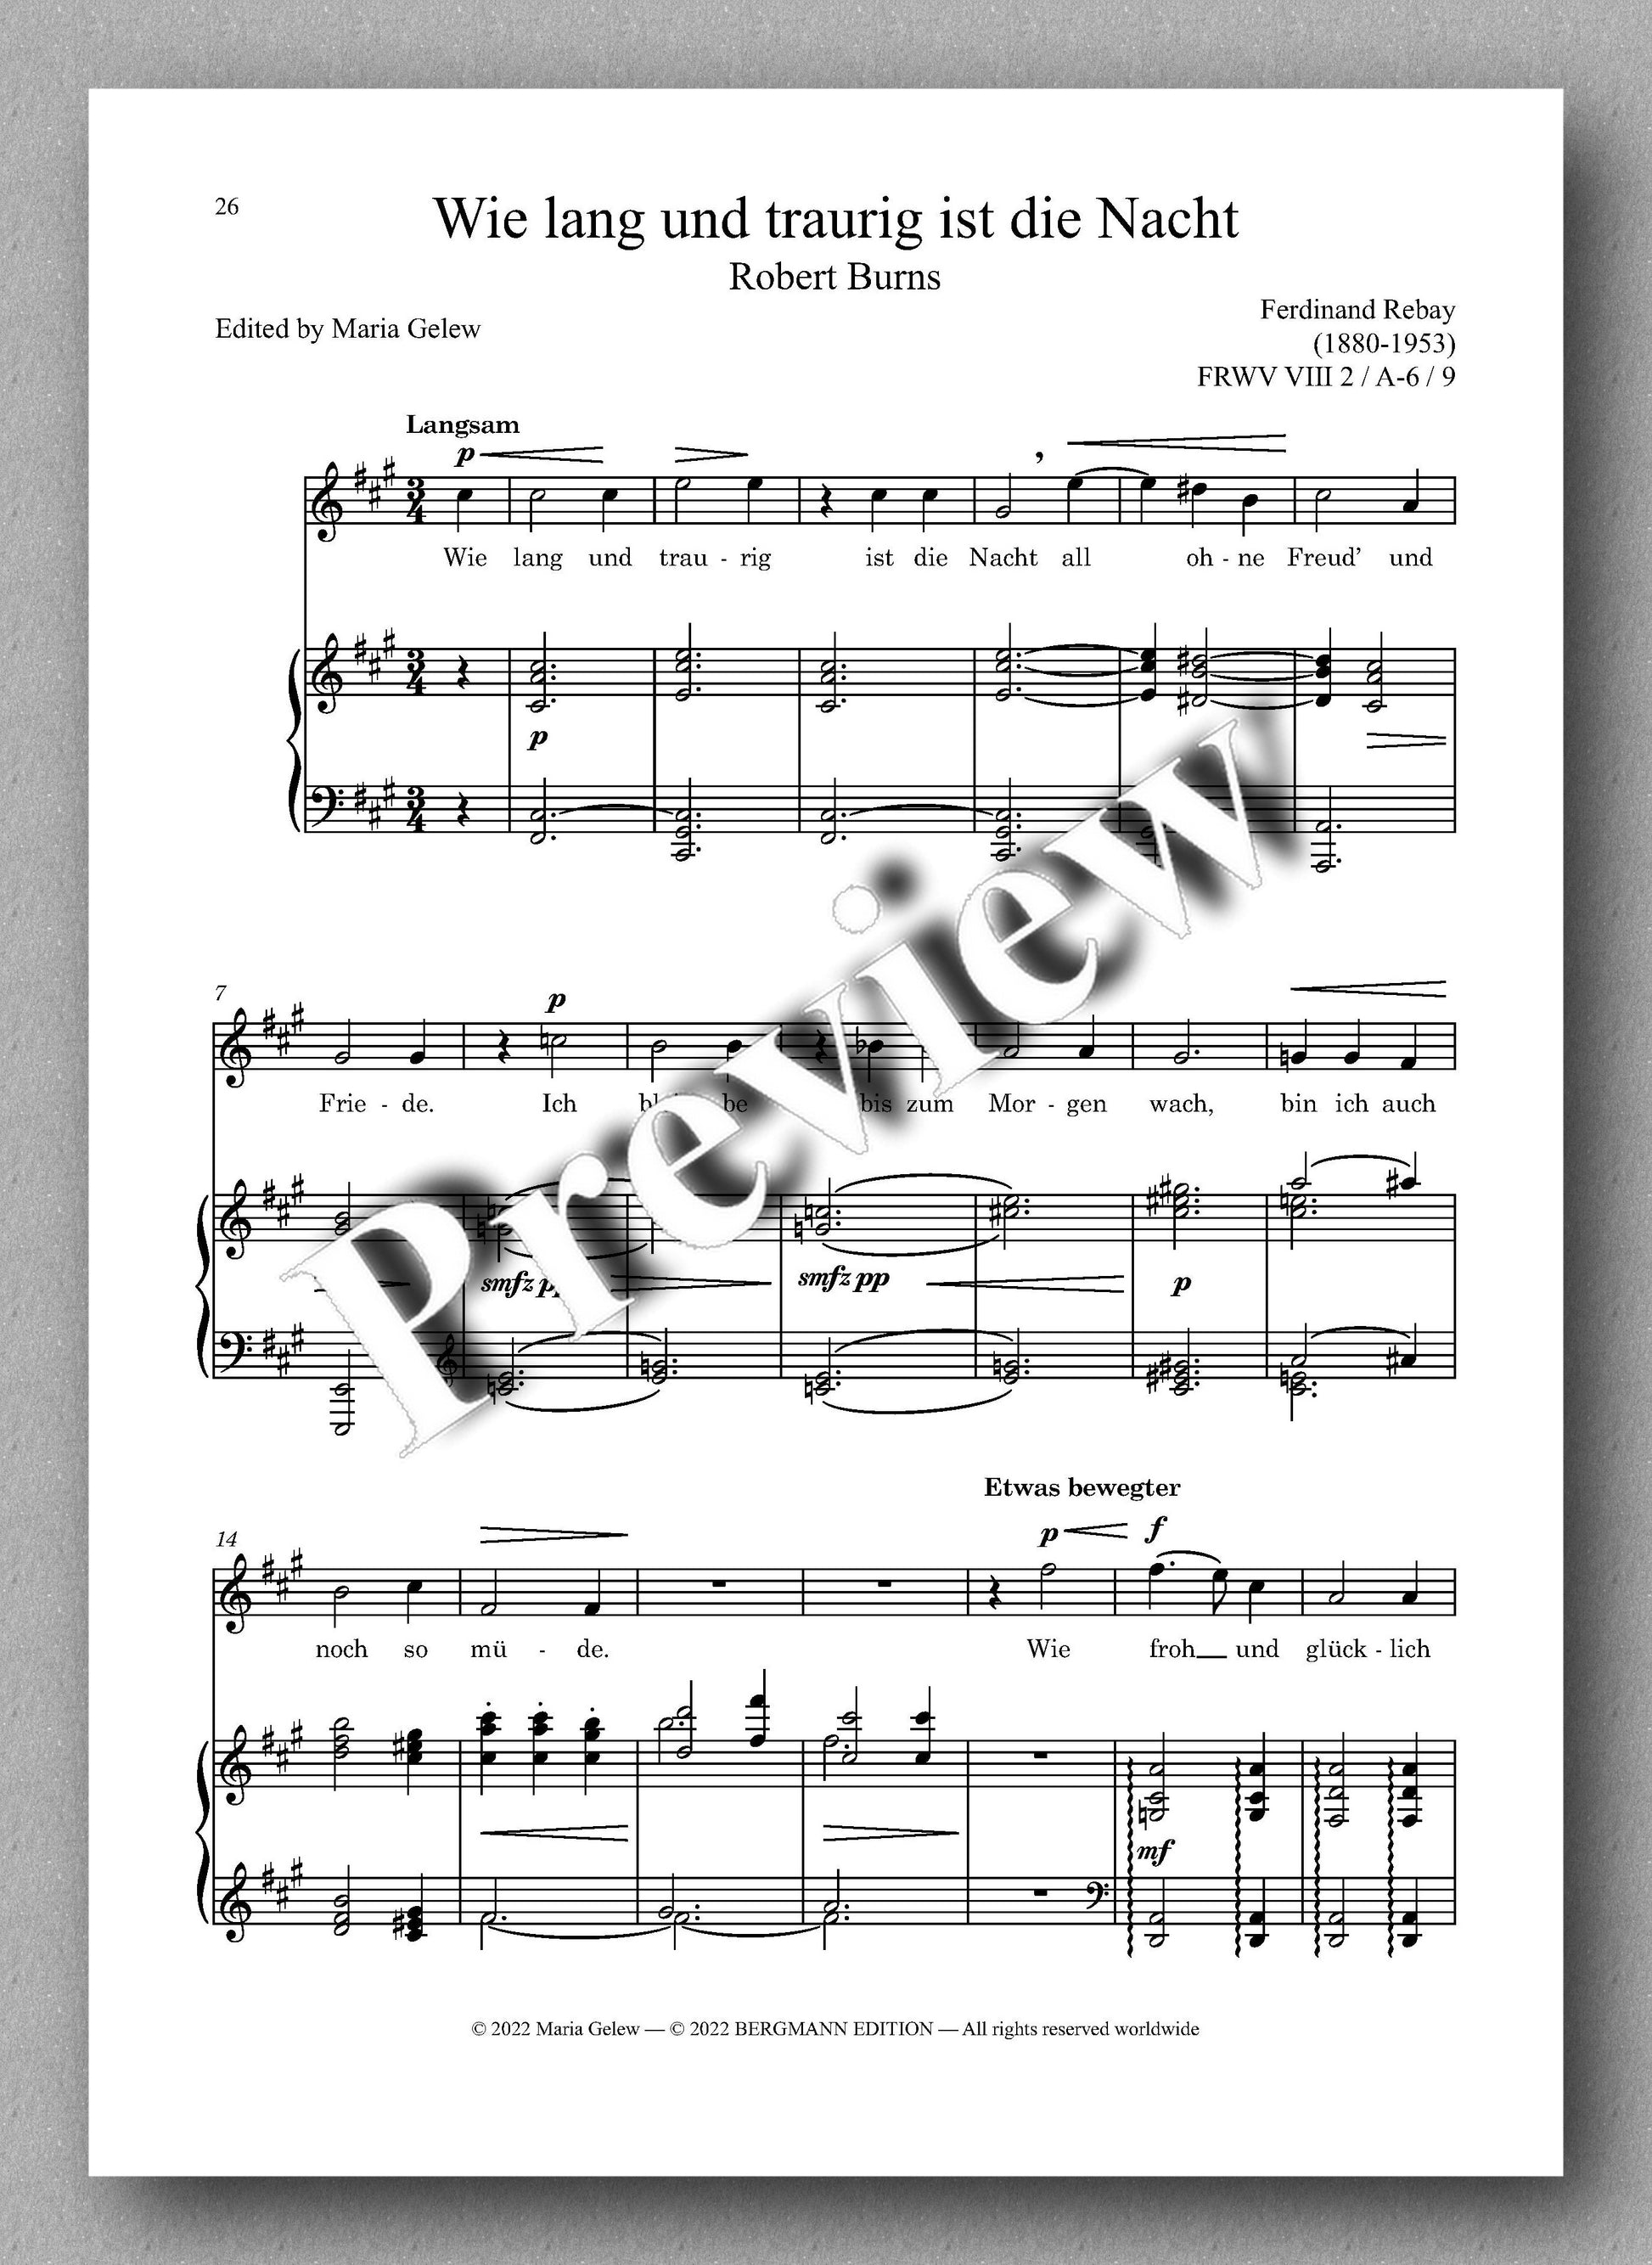 Ferdinand Rebay, Lieder nach Gedichten von Robert Burns (1759-1796) - preview of the music score 3